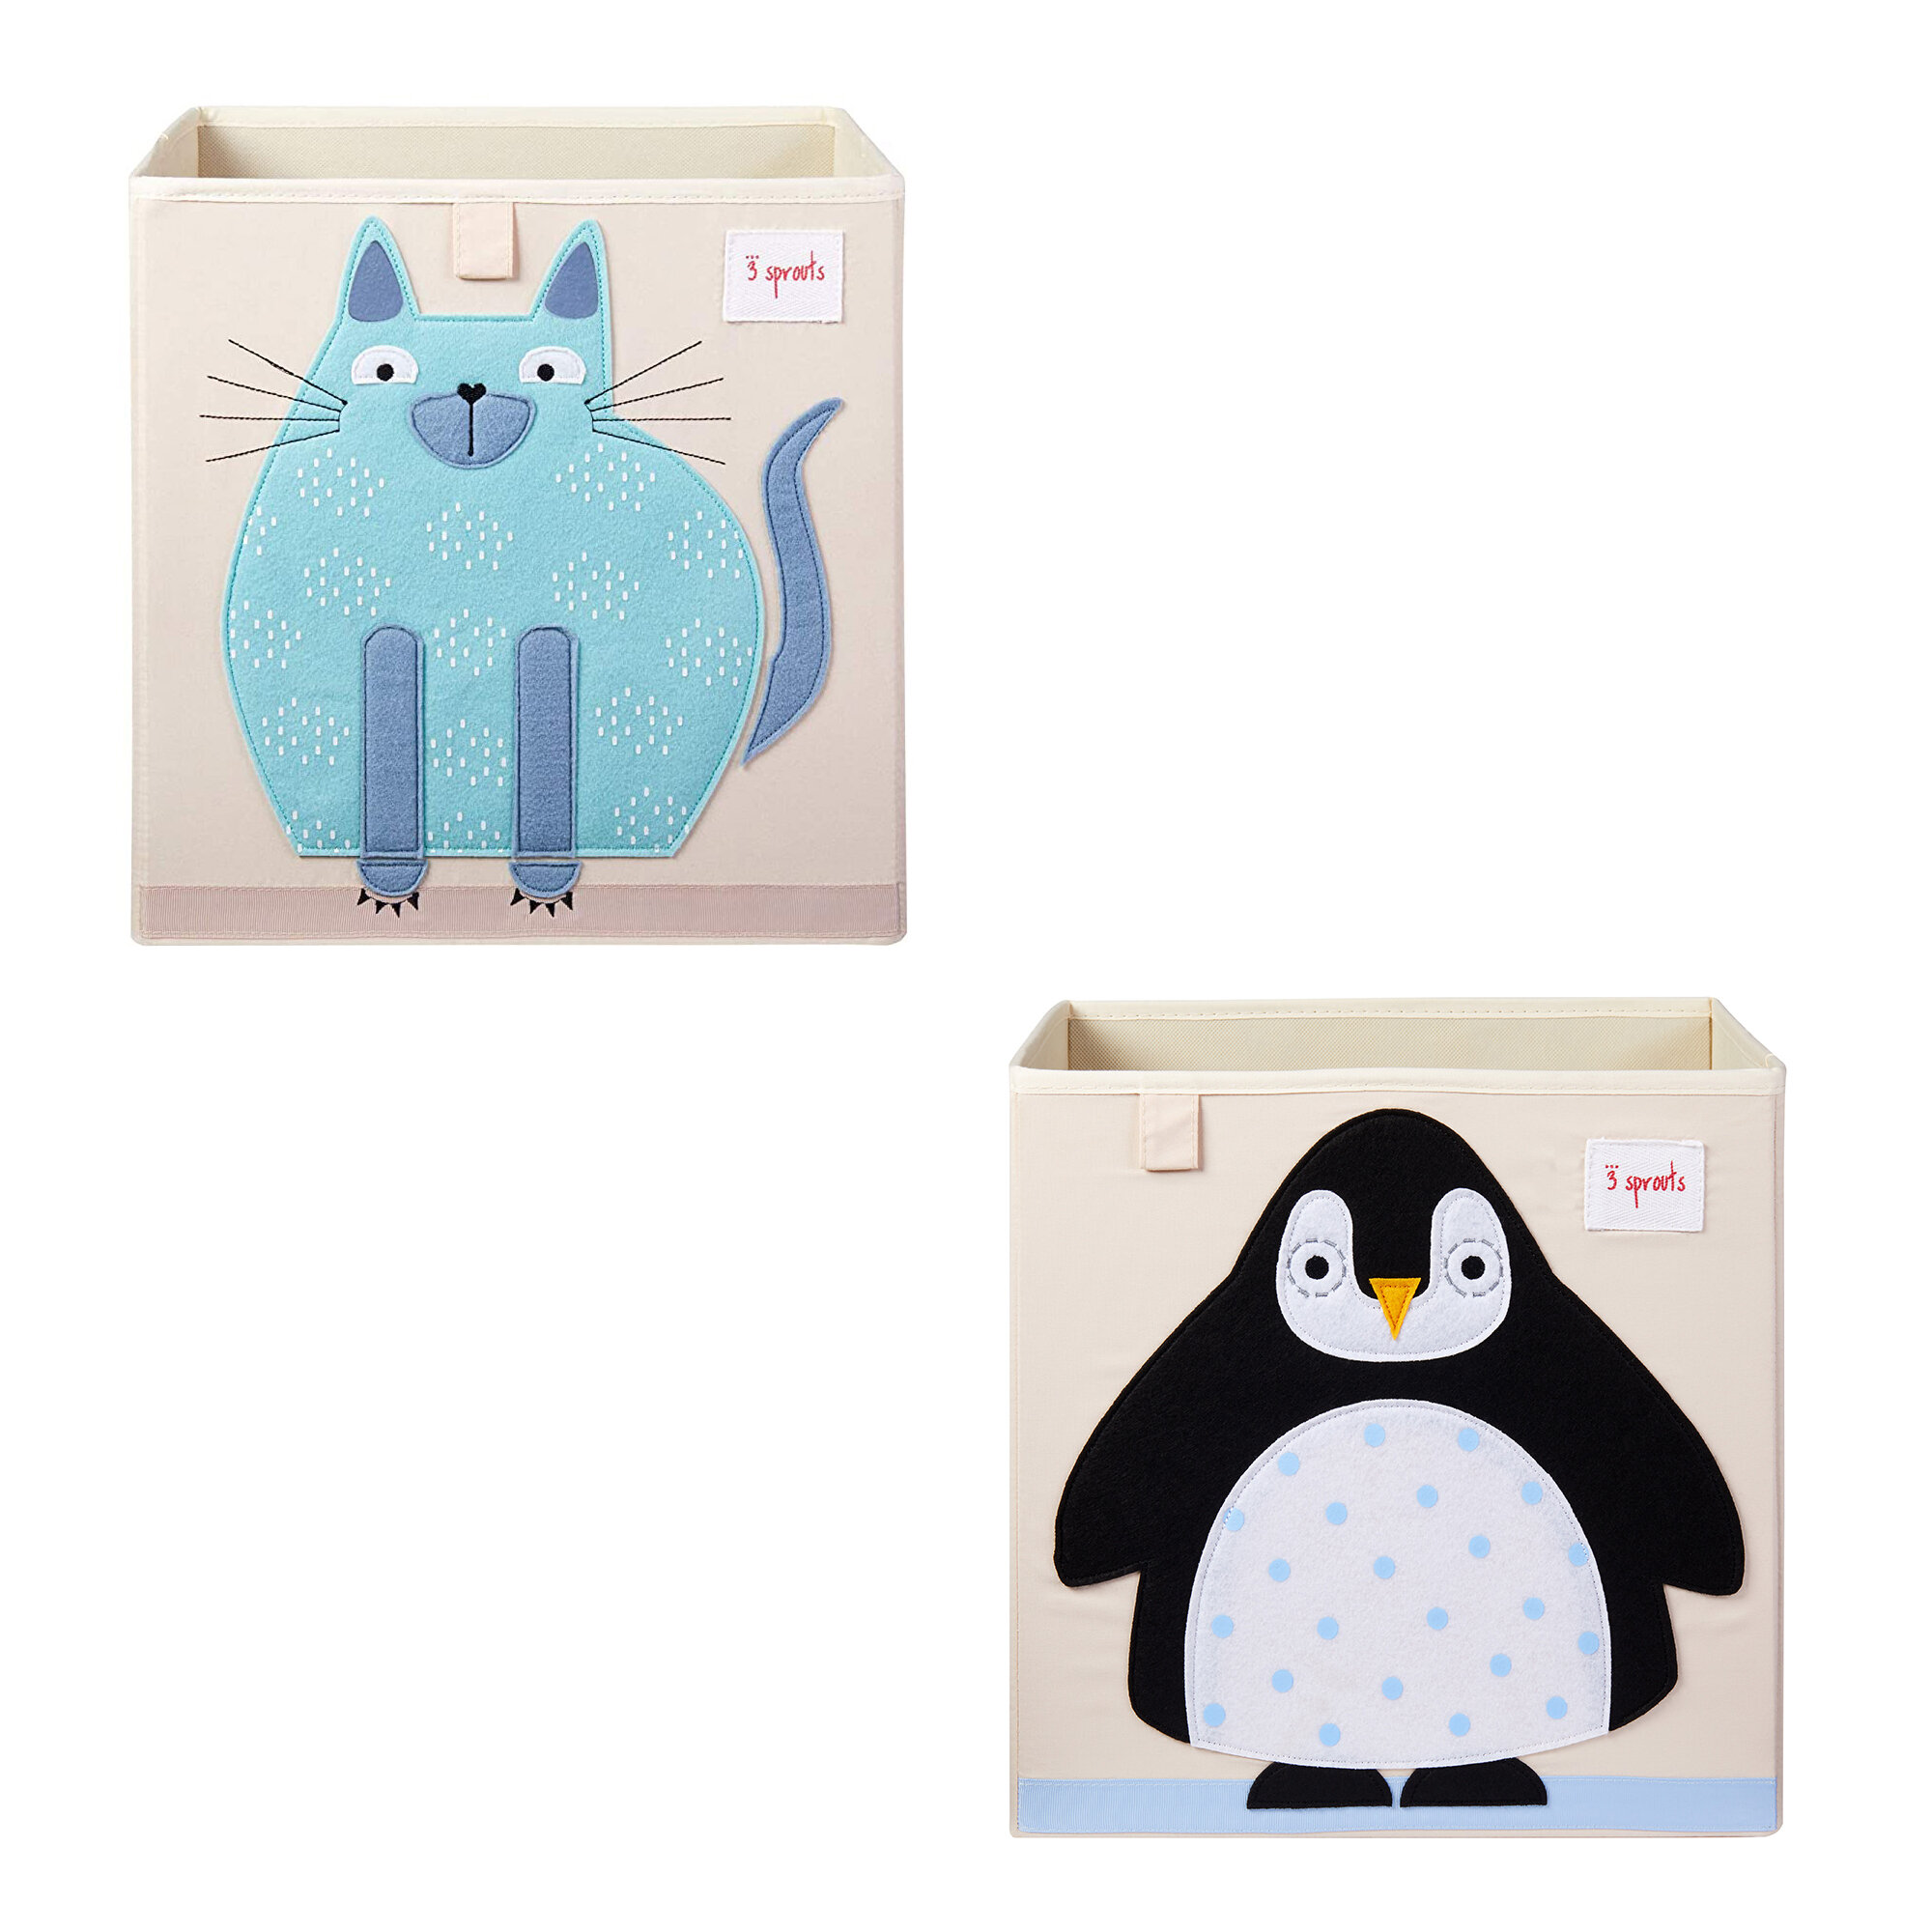 https://assets.wfcdn.com/im/96088752/compr-r85/1549/154989813/cat-and-arctic-penguin-2-piece-fabric-bin-set.jpg